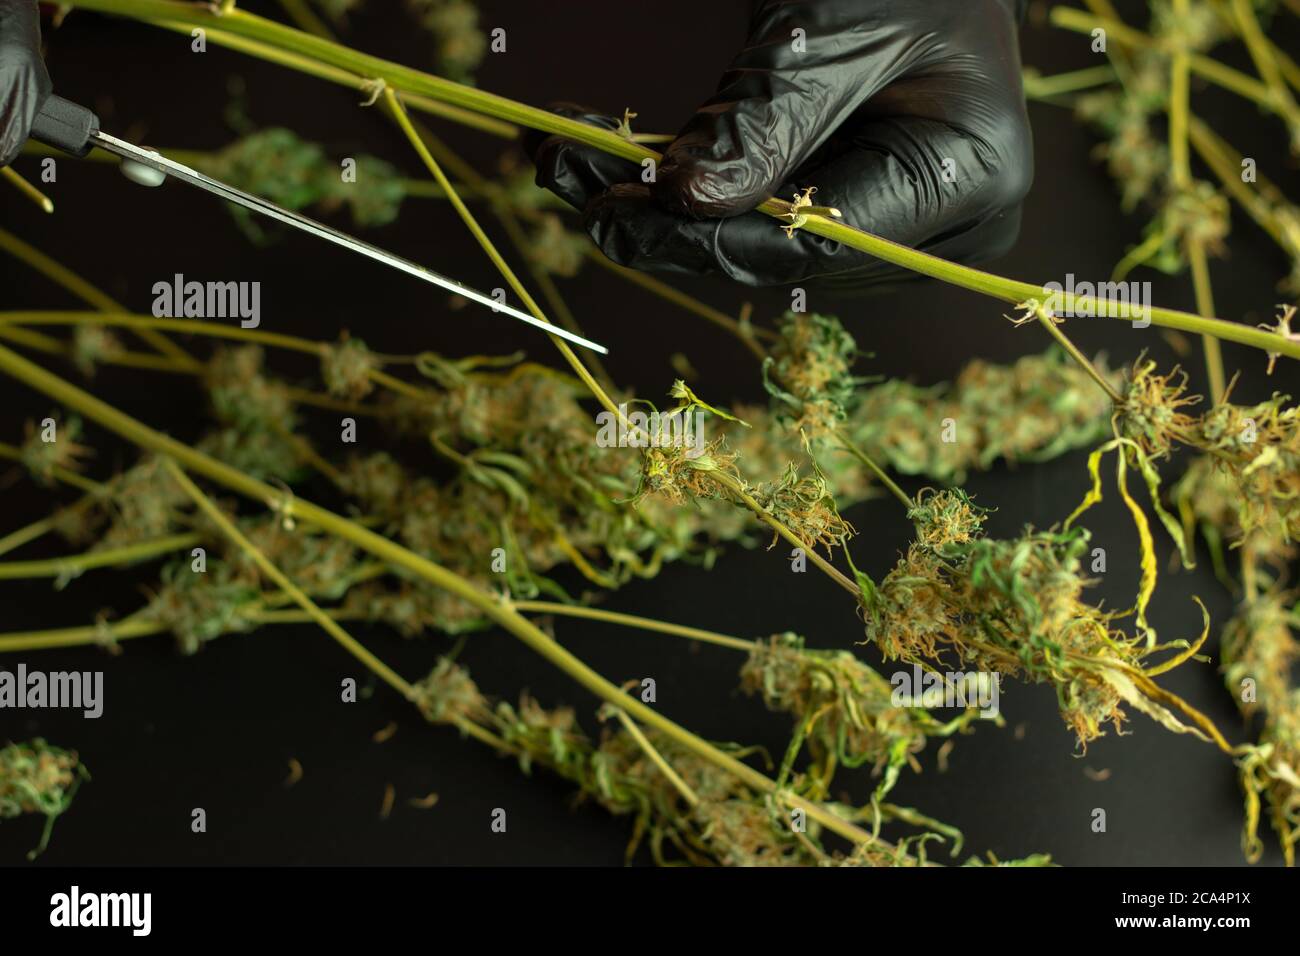 Planta de marihuana en mano de hombre con guantes, tijeras y cannabis. Copiar el espacio sobre el fondo con brotes de maleza Foto de stock